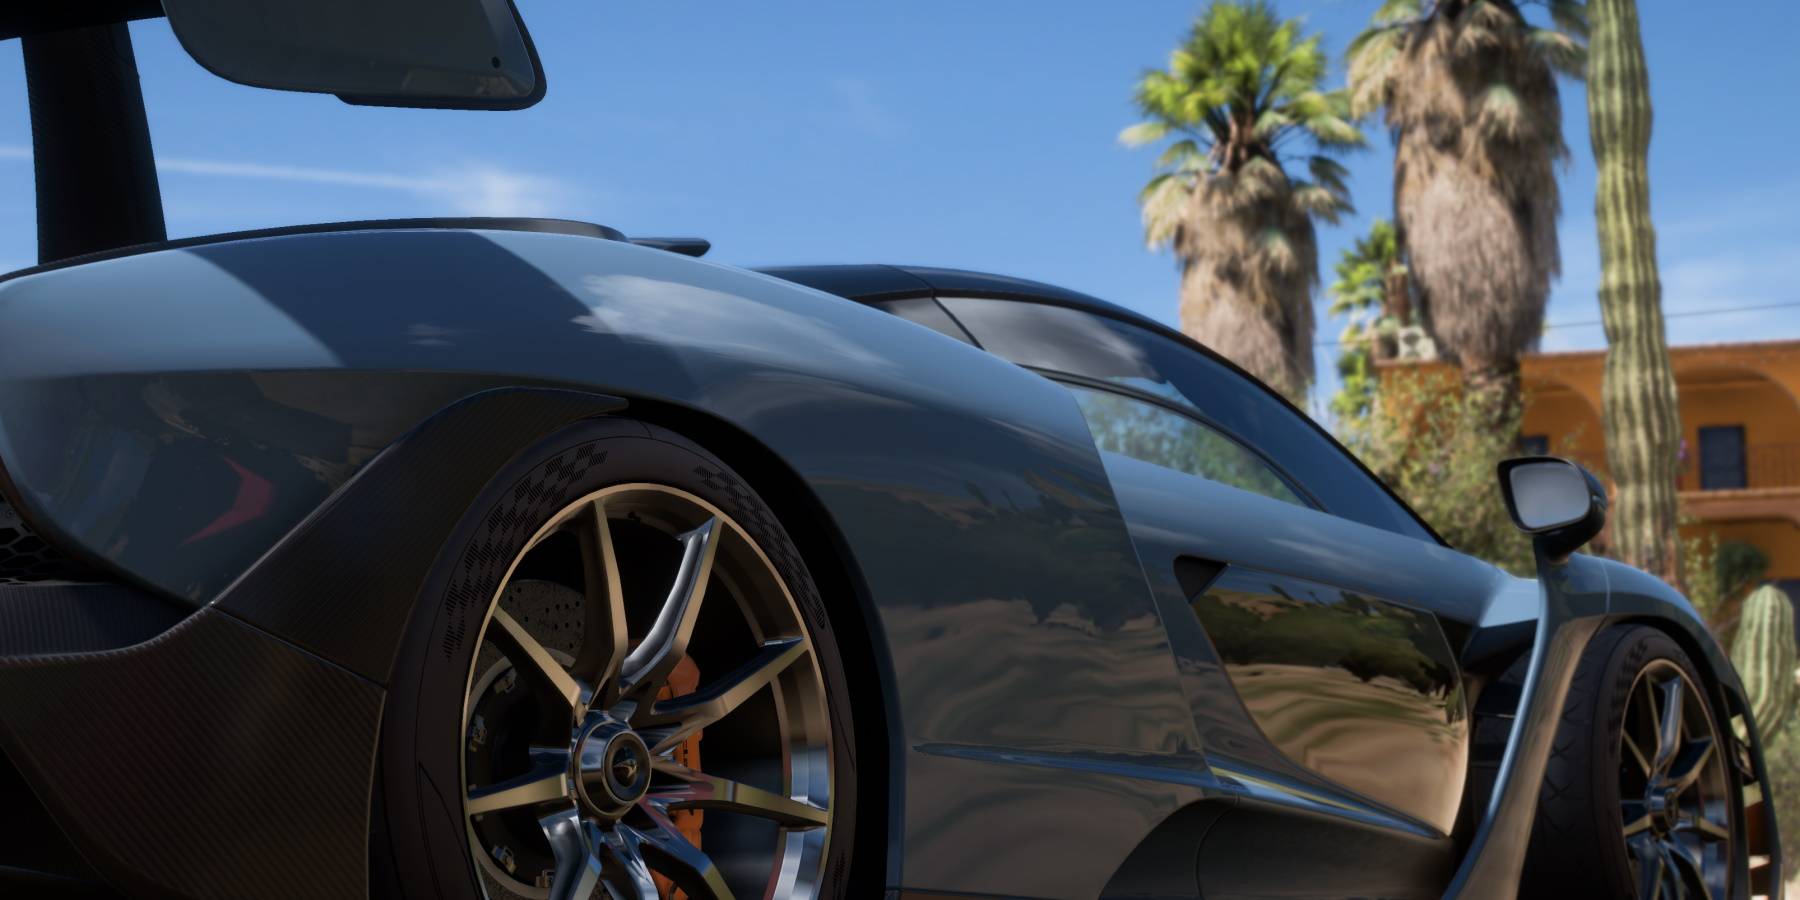  Modo coche de vista Forza Horizon 5 en casa bella house